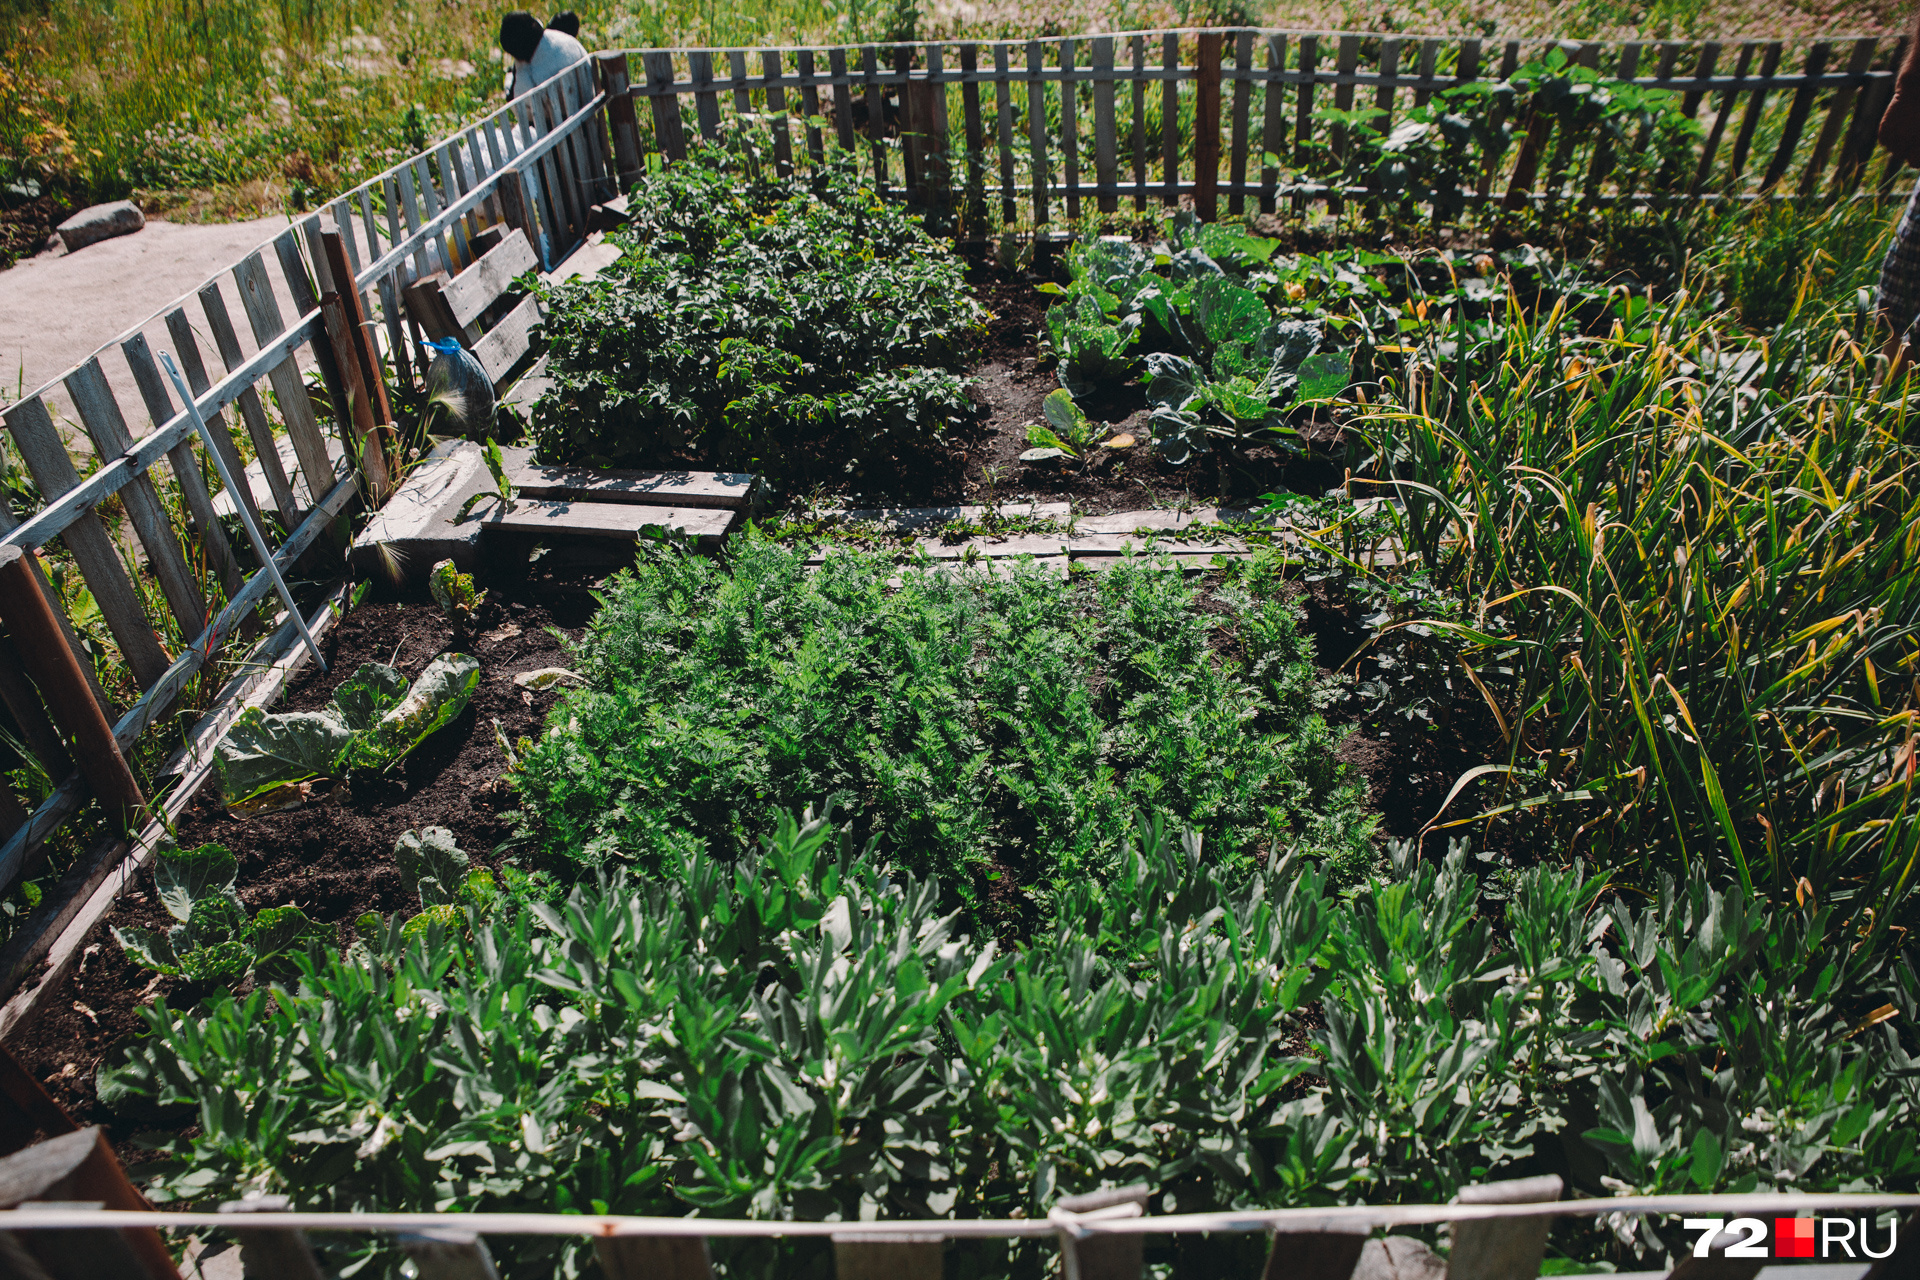 Овощи — не просто украшение мини-садовых участков. Местные жители собирают урожай и делят его между собой